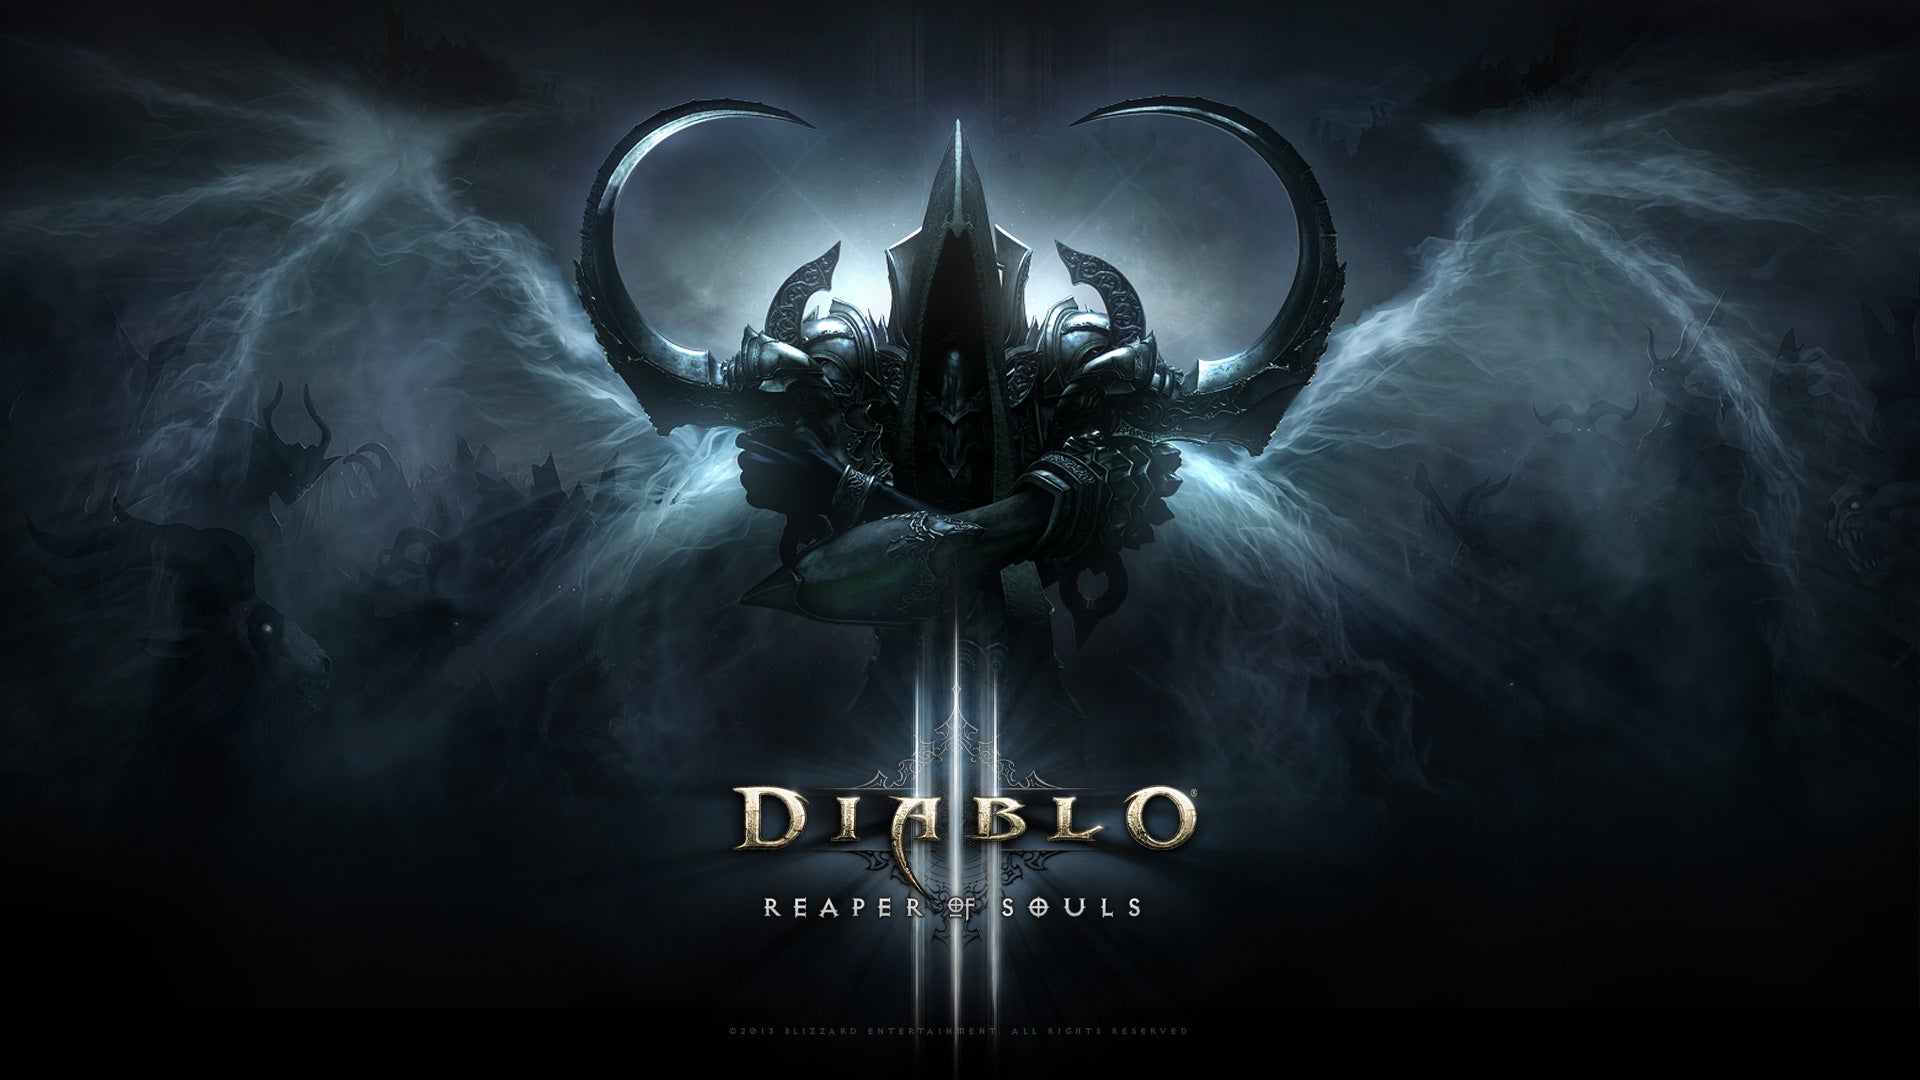 Reaper of Souls - Diablo III Guide - IGN